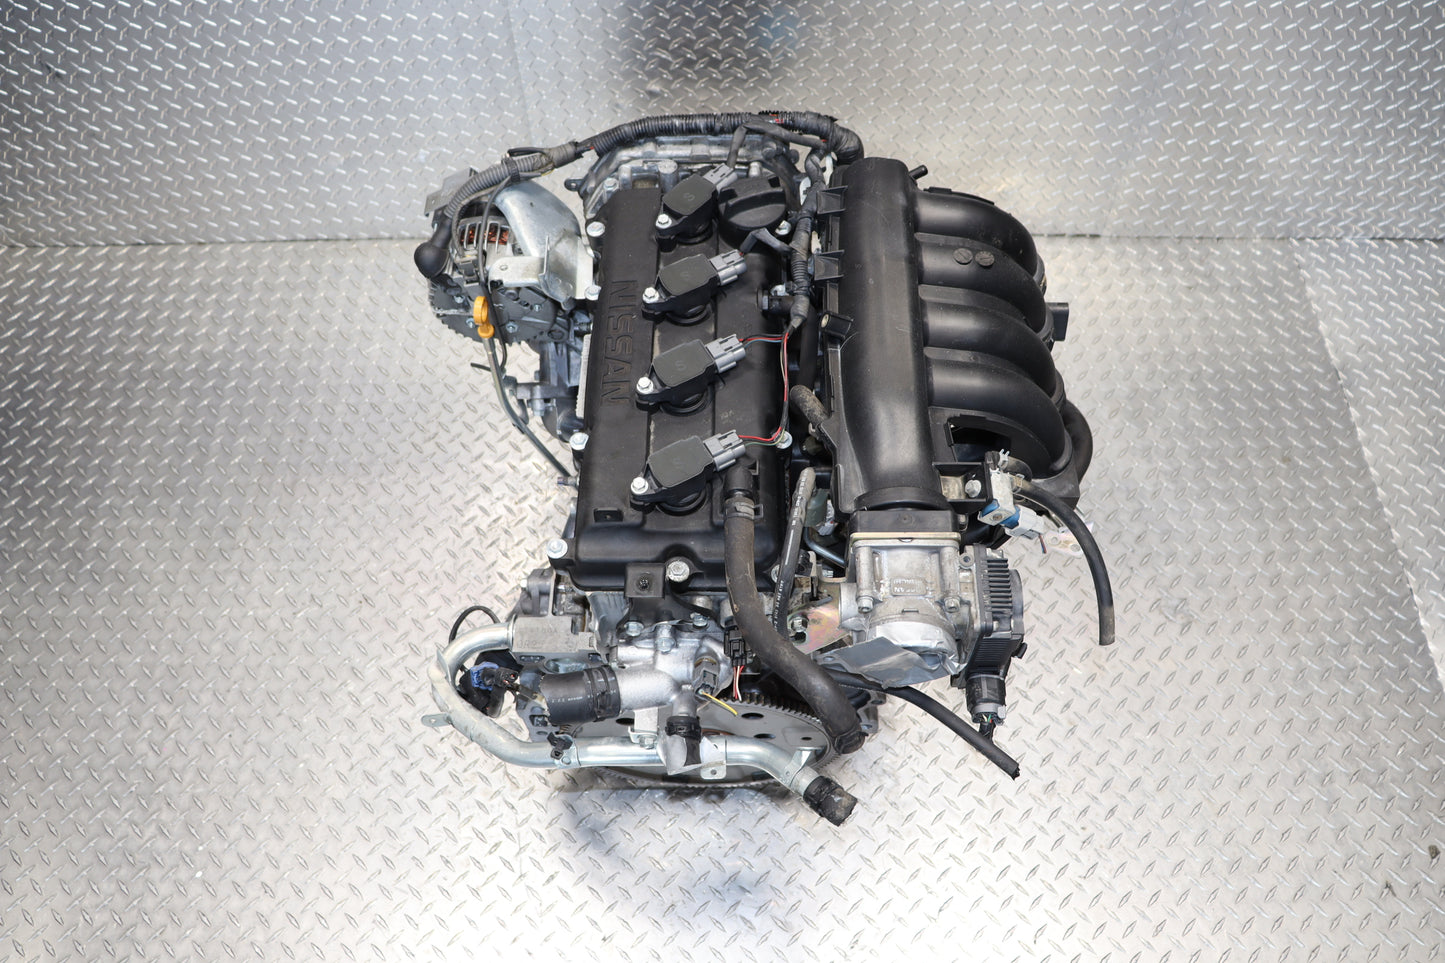 JDM QR25DE 02-06 Nissan Altima Engine 2.5L Sentra SE-R 4CYL